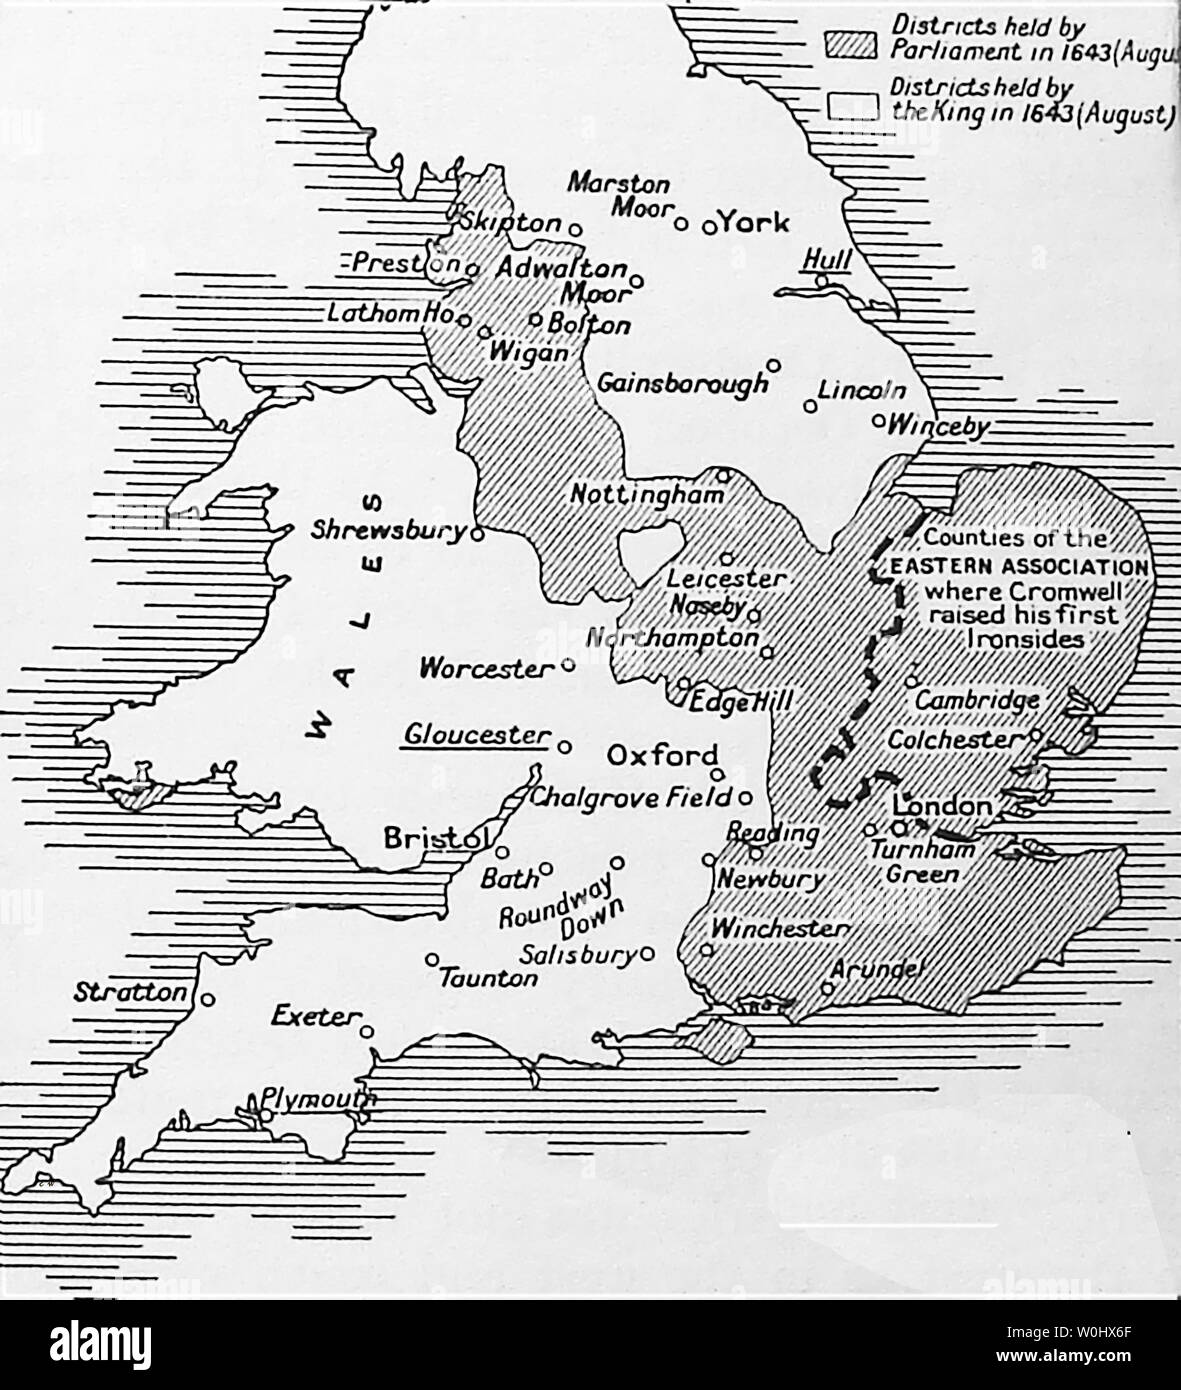 Un manuel scolaire de 1930 Carte montrant des villes anglaises (souligné) qui ont été fidèles au roi dans la guerre civile anglaise et des zones tenues par lui ou par le Parlement de Cromwell 1643 - 1643 était la deuxième année de la Première Guerre Civile Anglaise Banque D'Images